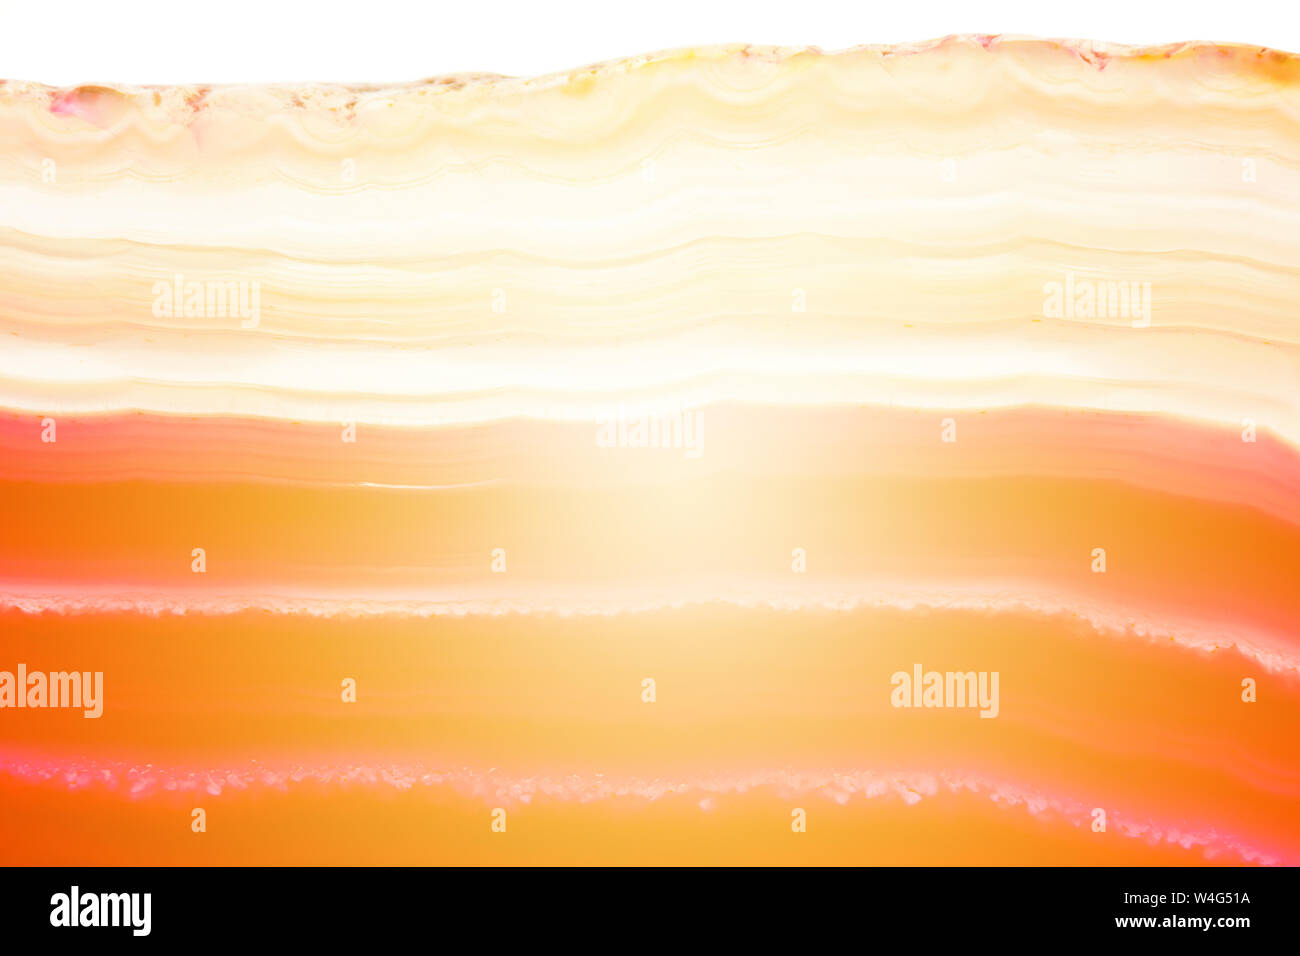 Abstract sfondo rosso e arancione a strisce di agata minerale sezione trasversale con sunbeam isolati su sfondo bianco Foto Stock